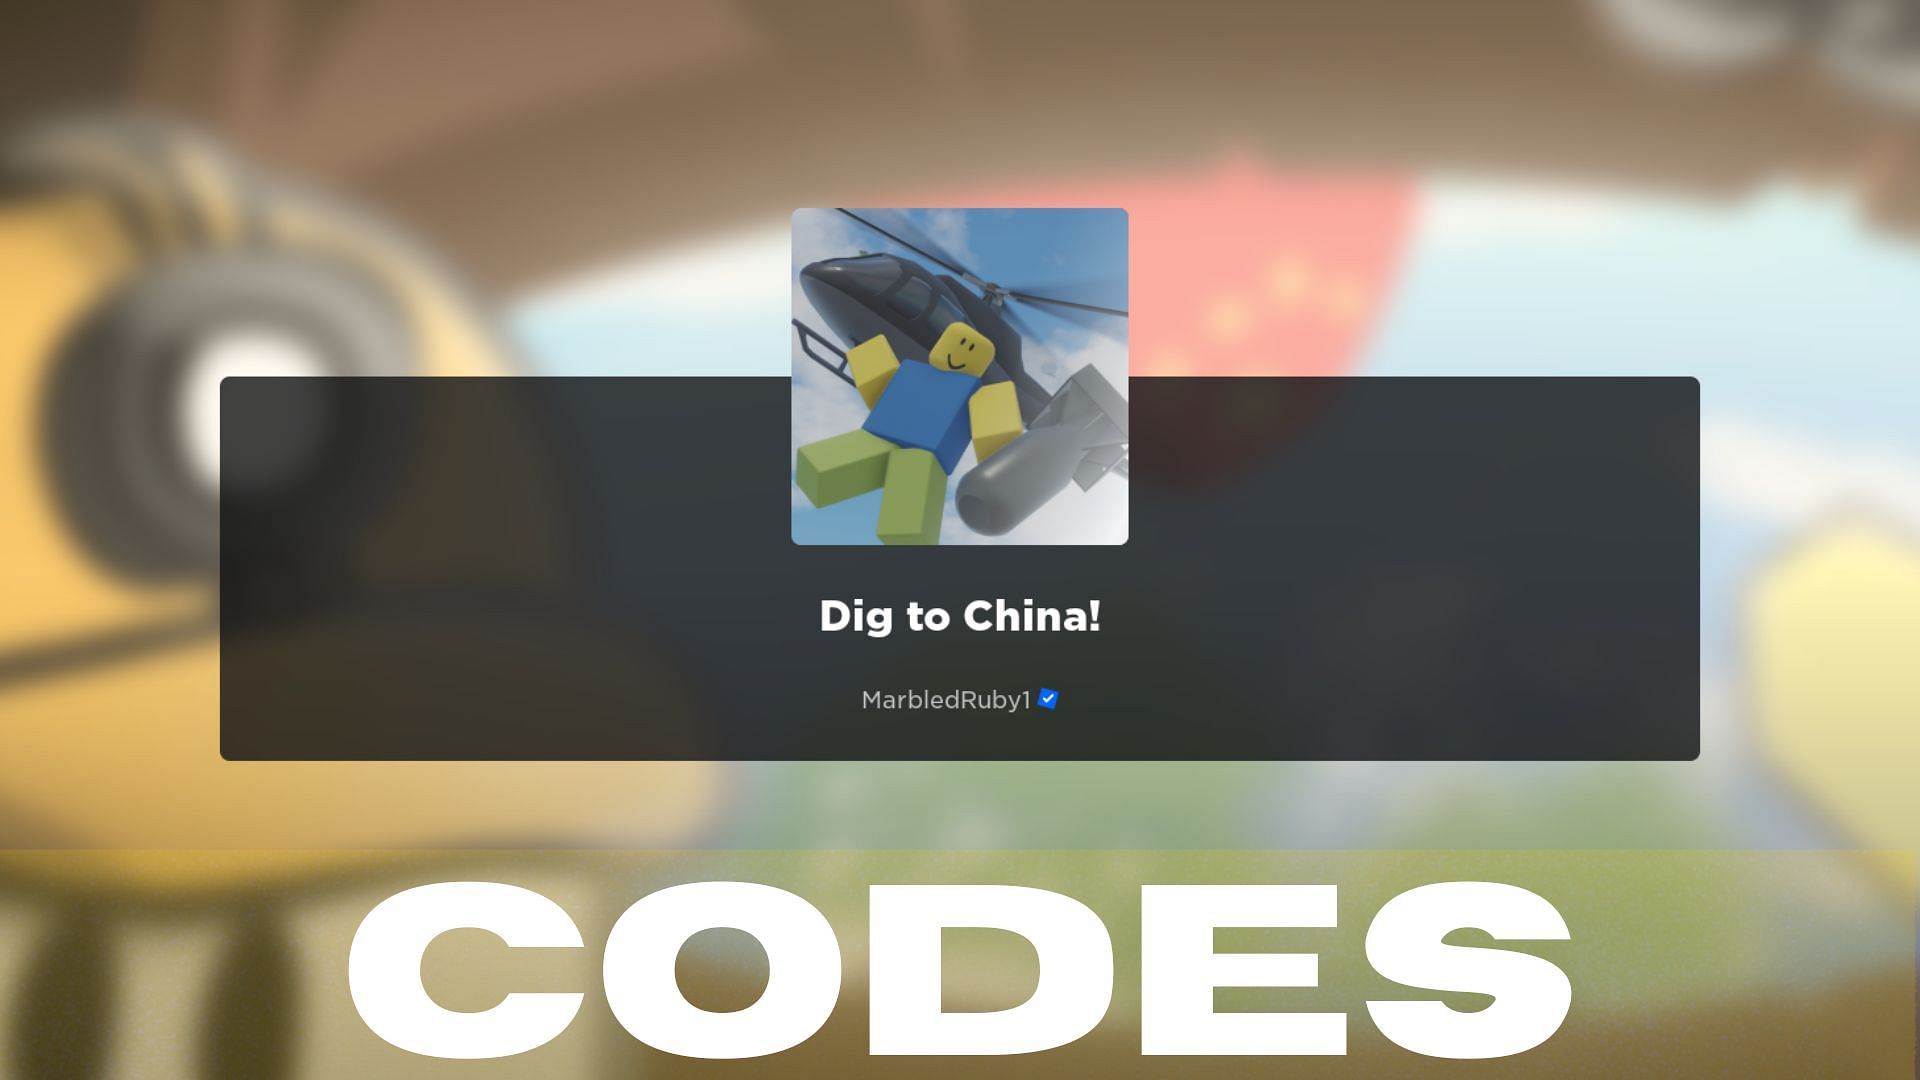 Dig to China! Codes